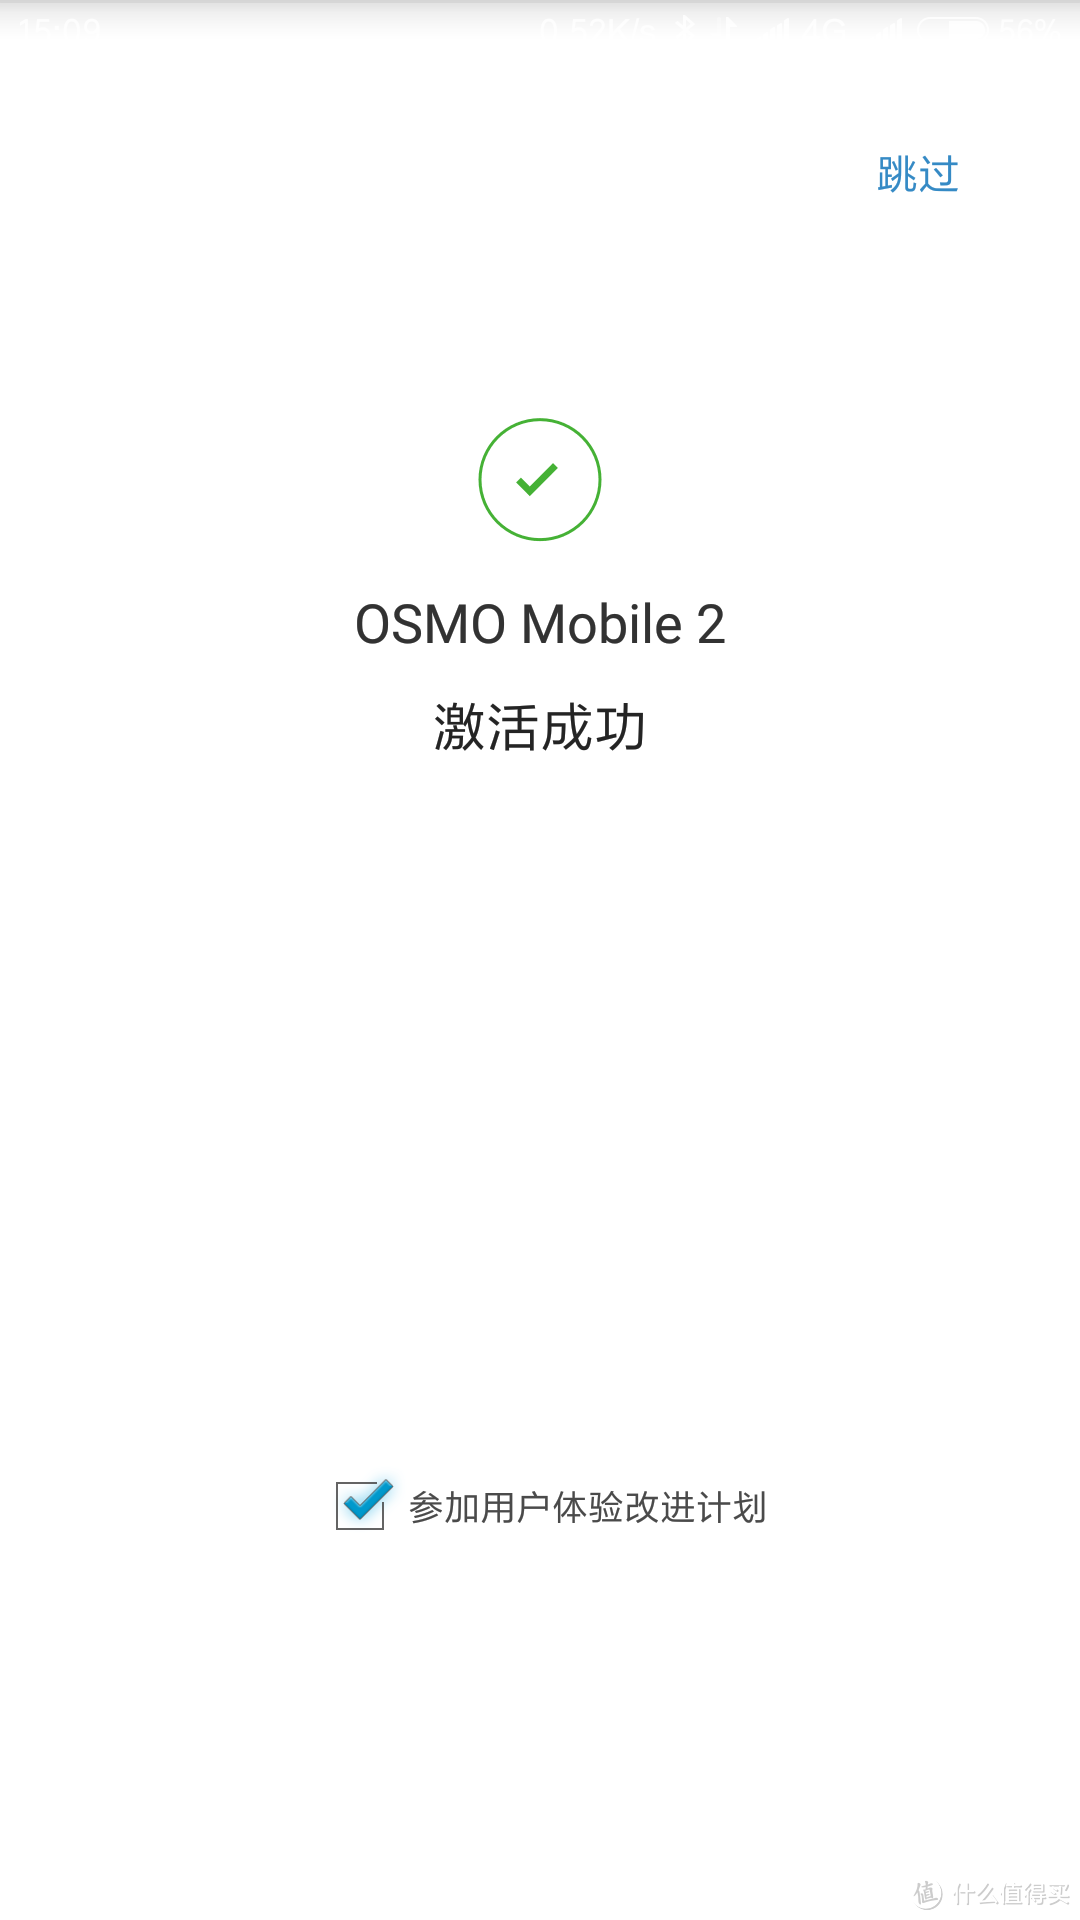 让更多的人可以用手机记录身边更多的美——DJI大疆创新 灵眸OSMO手机云台 2 深度评测 对比OSMO 1代